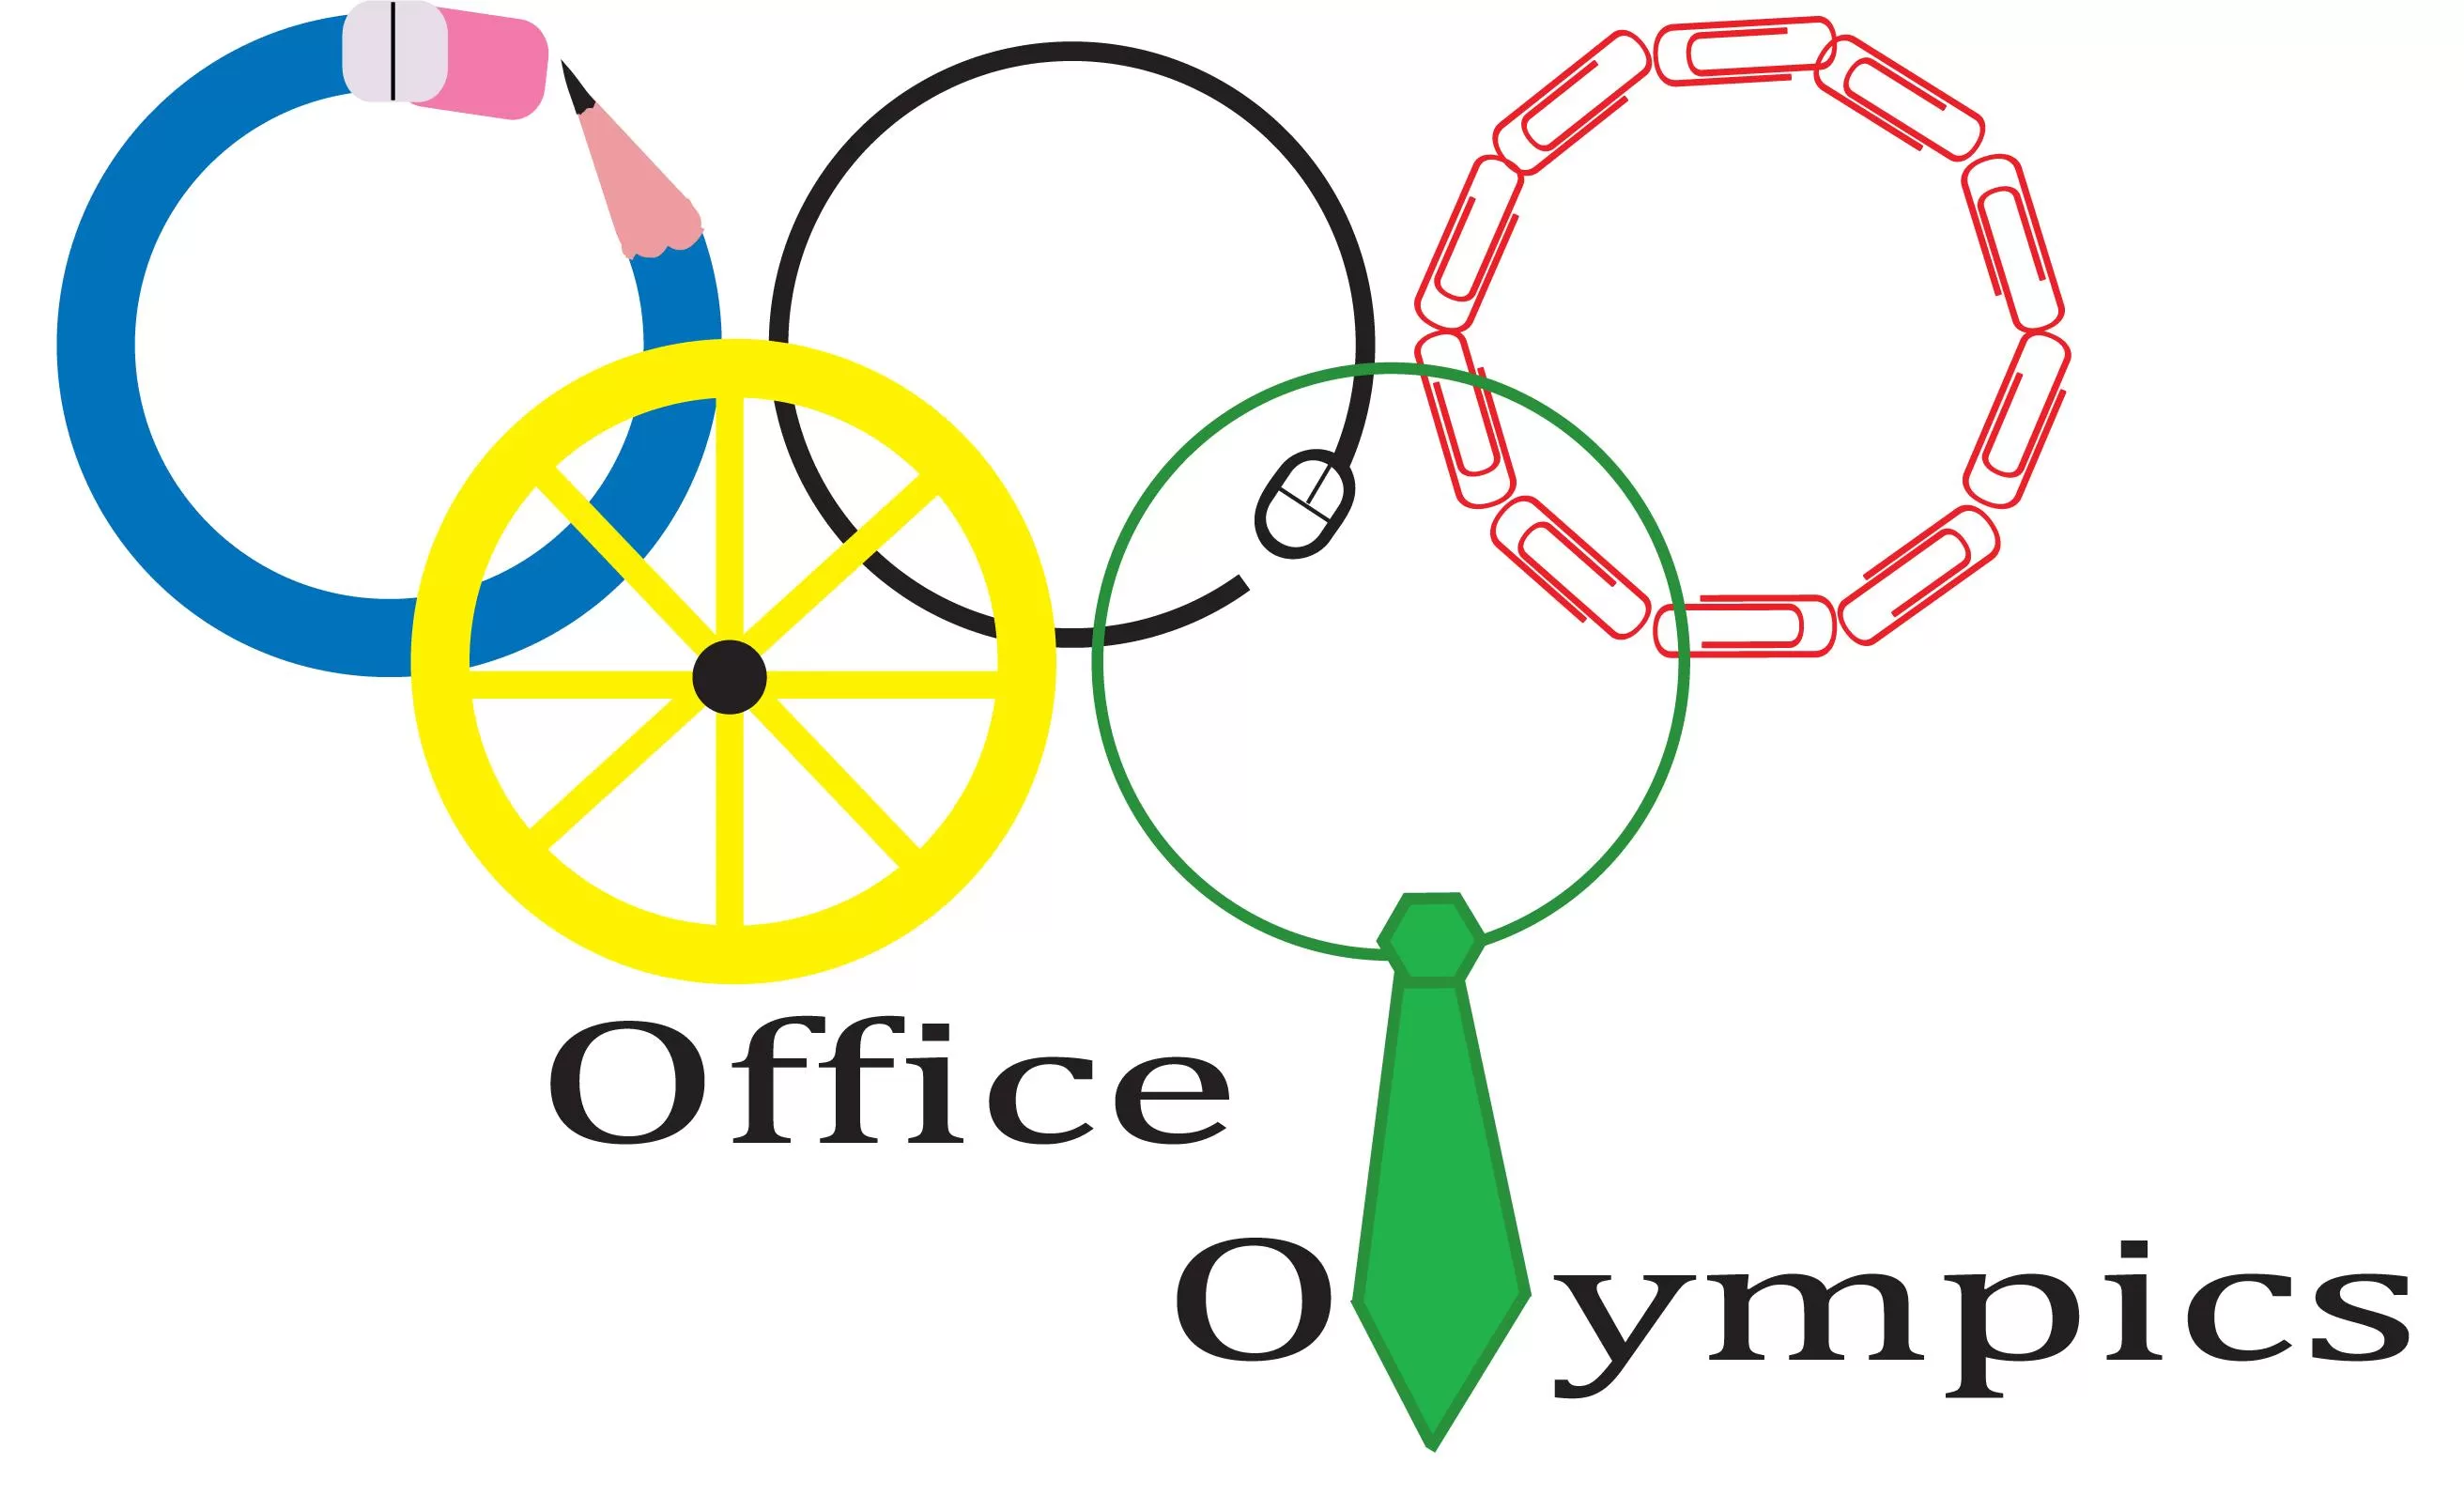 Office Olympics Trivia